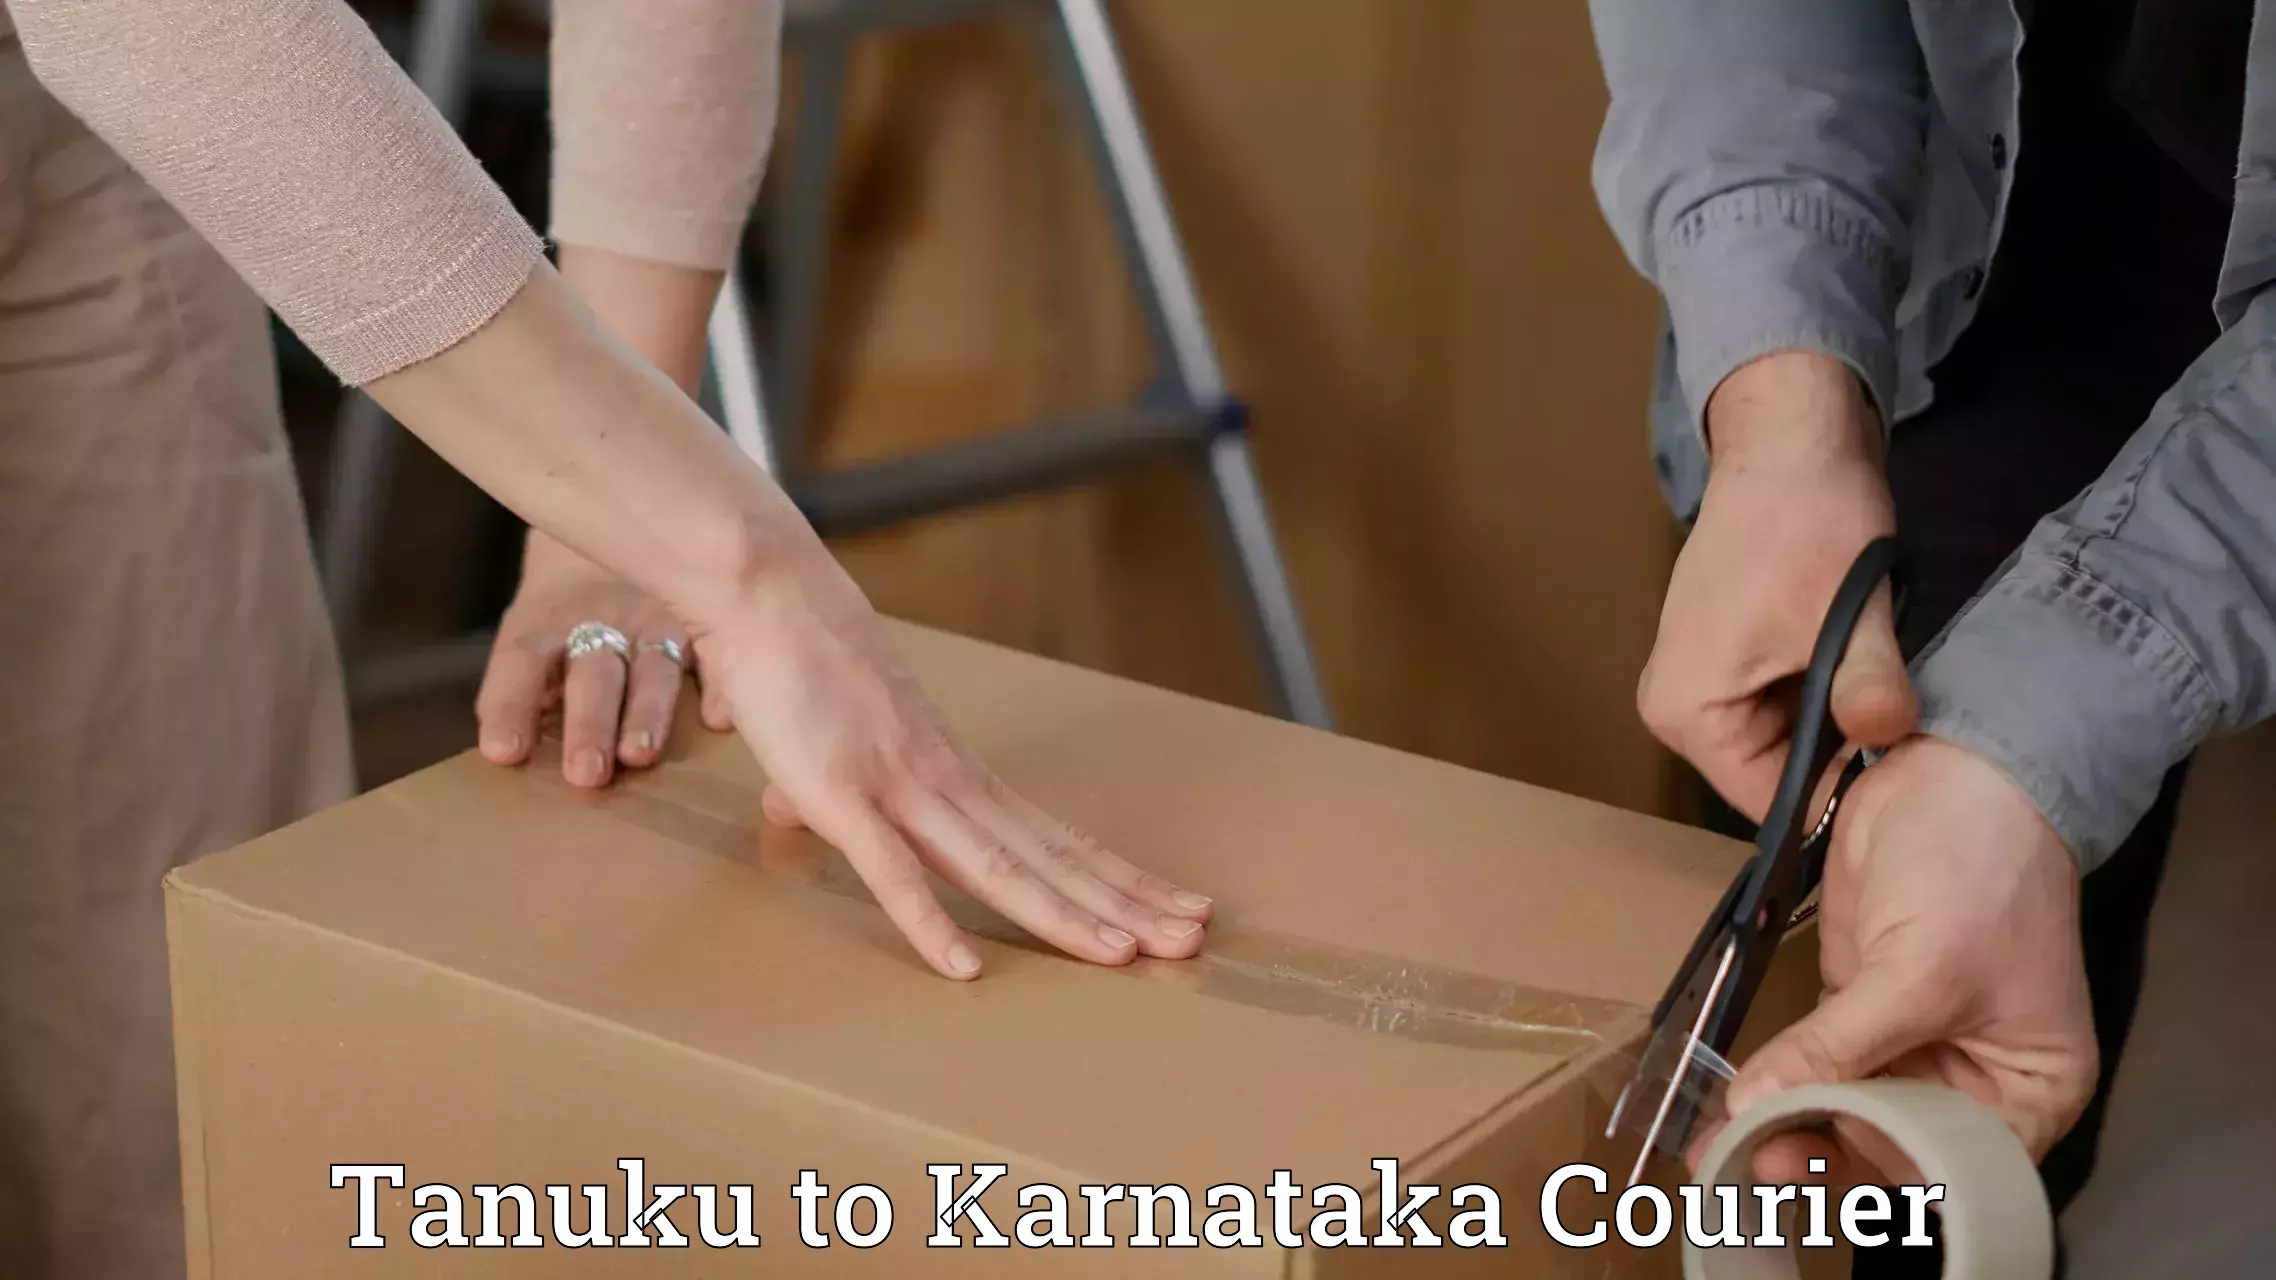 Baggage transport quote Tanuku to Karnataka